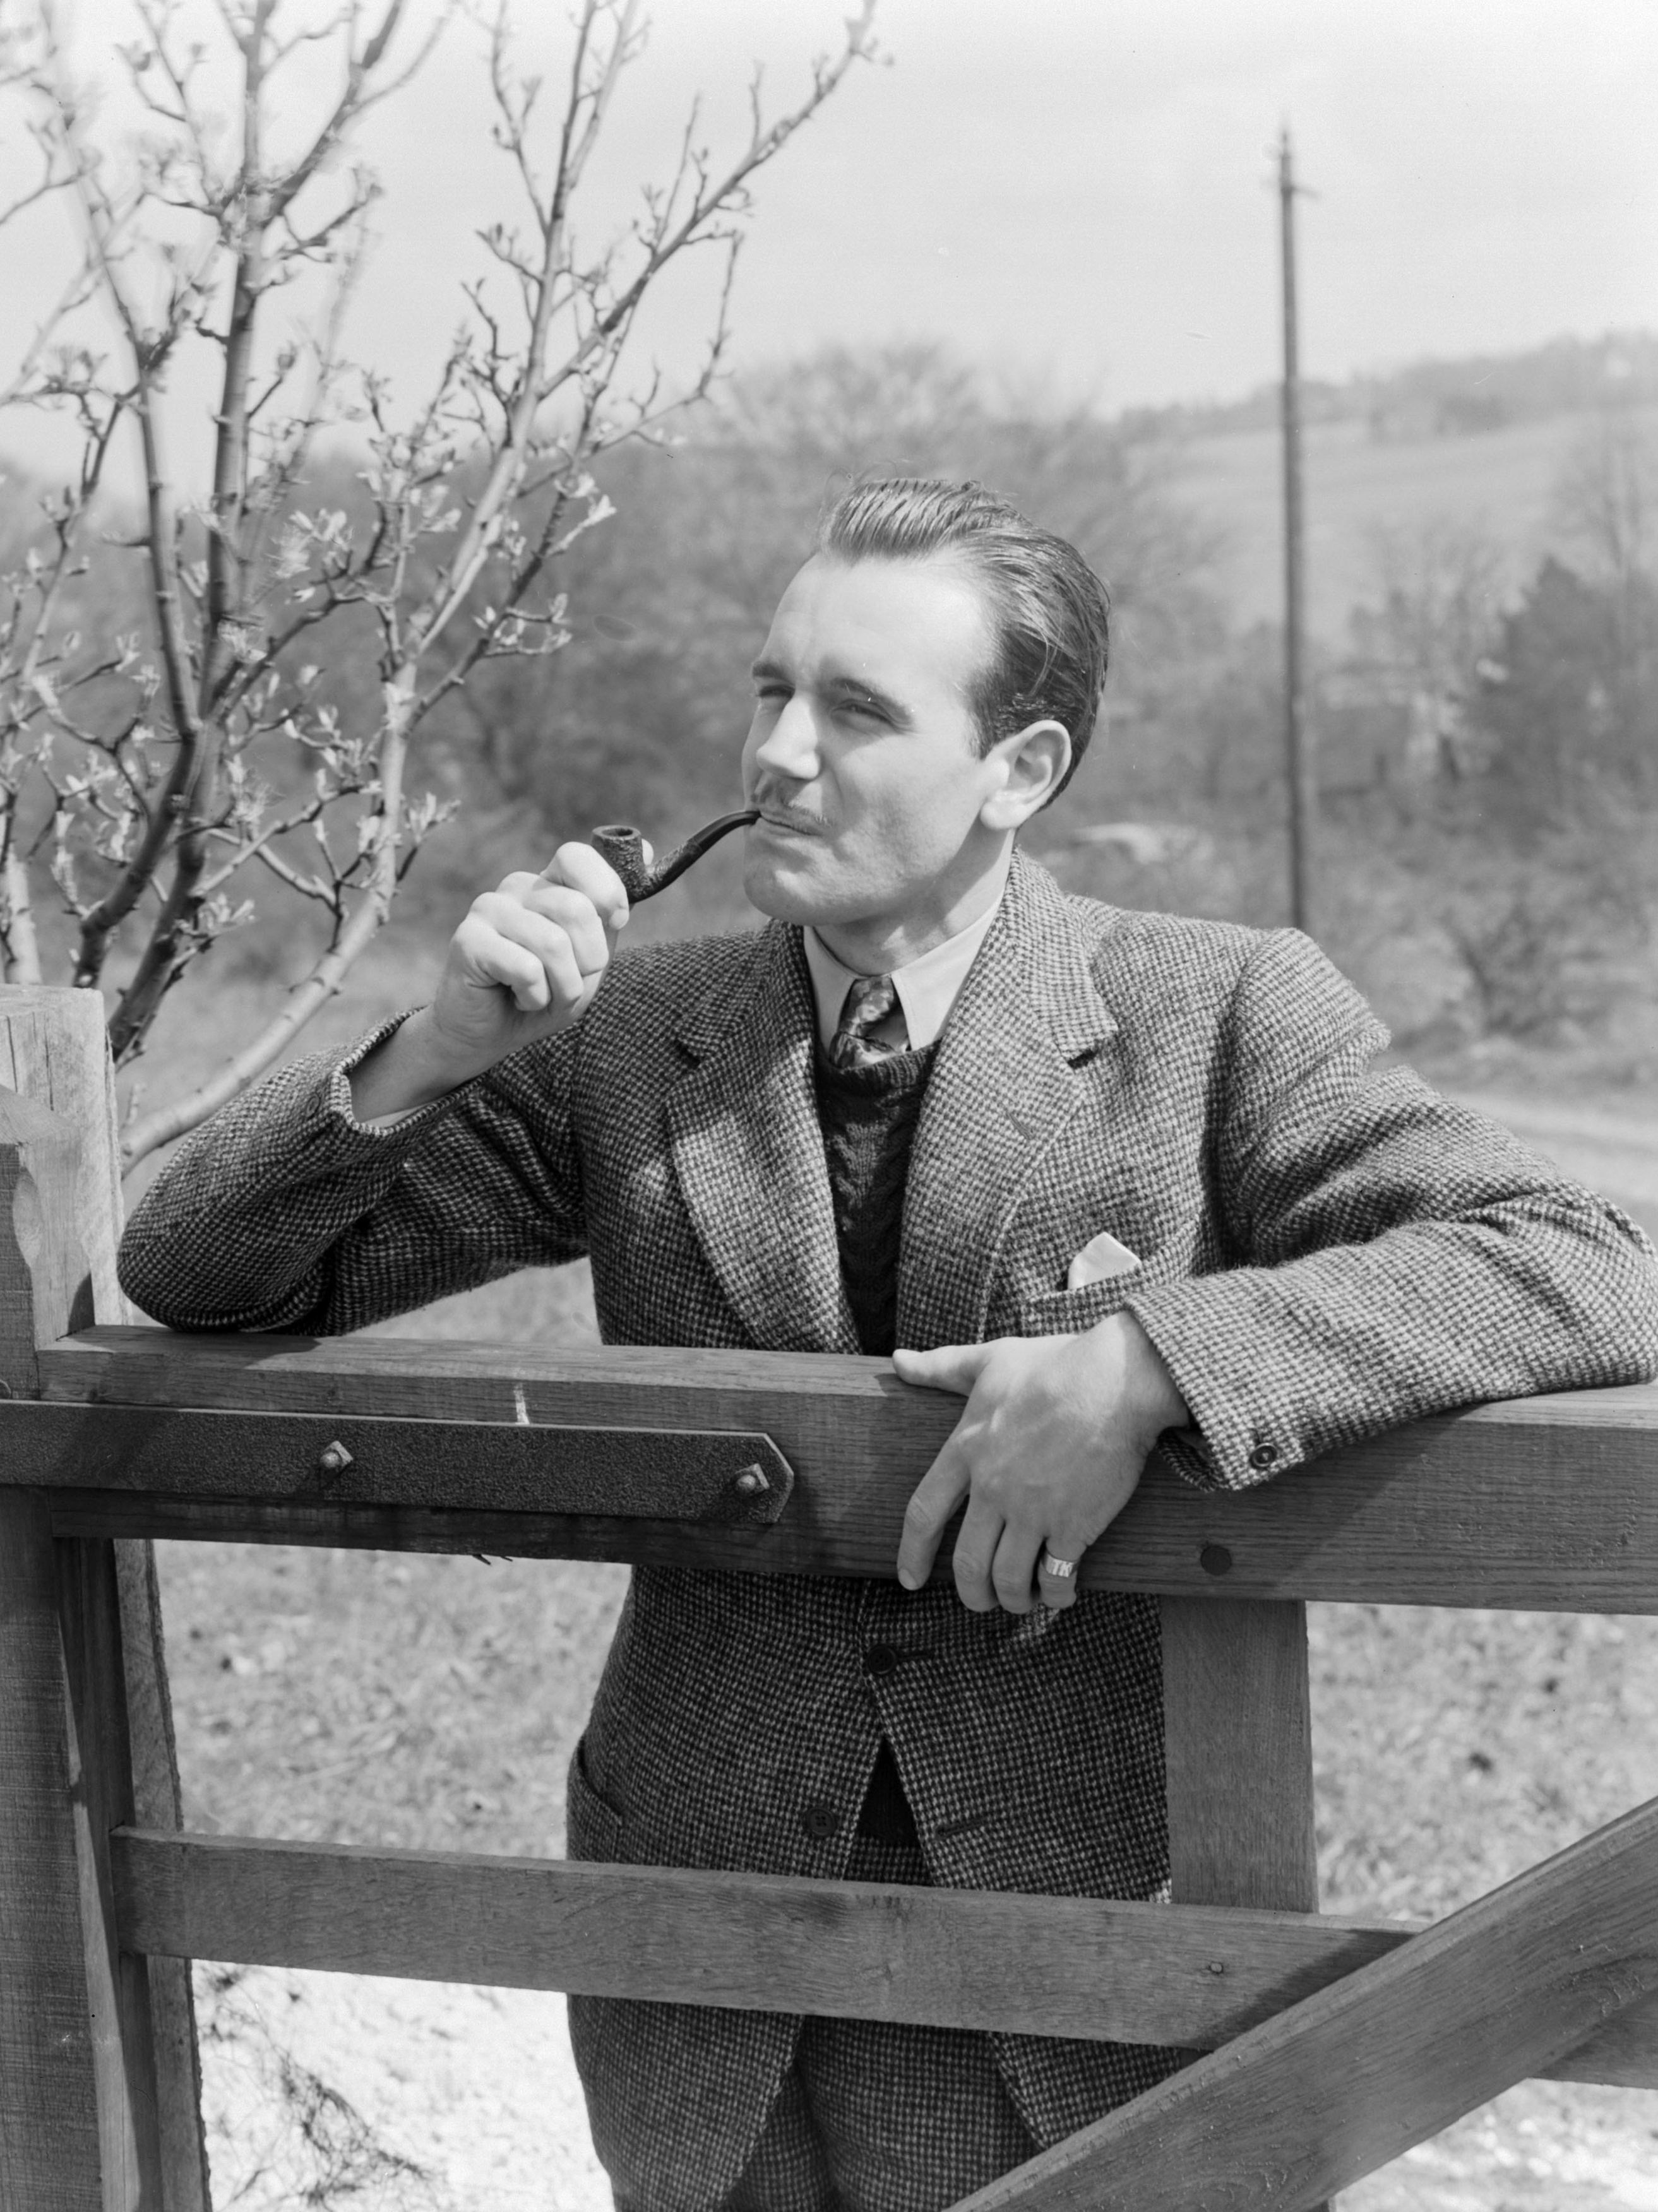 Man at a gate smoking a pipe, 1951.